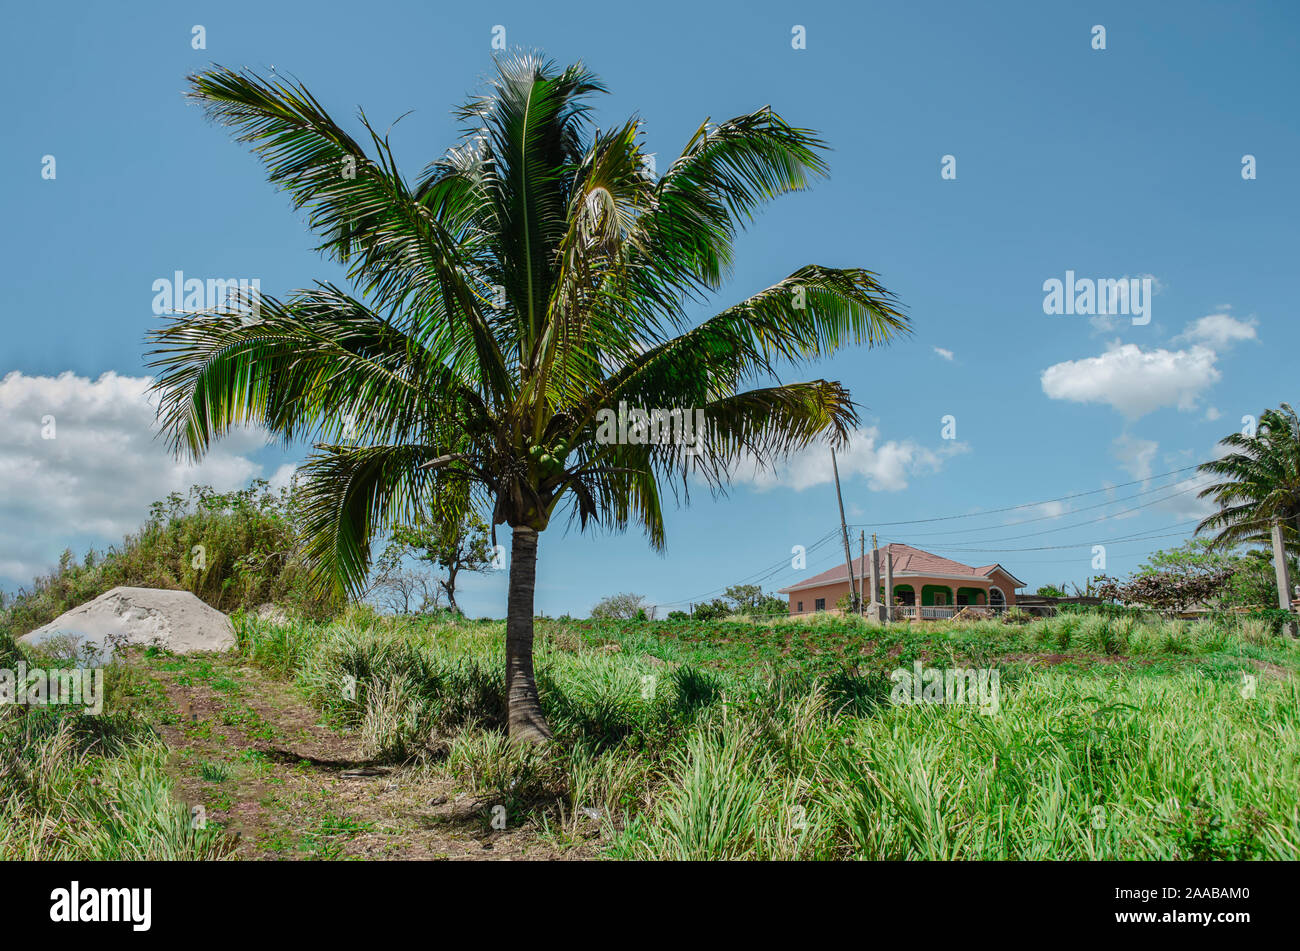 Petit arbre de palmiers à noix de coco sur un paysage vert Banque D'Images